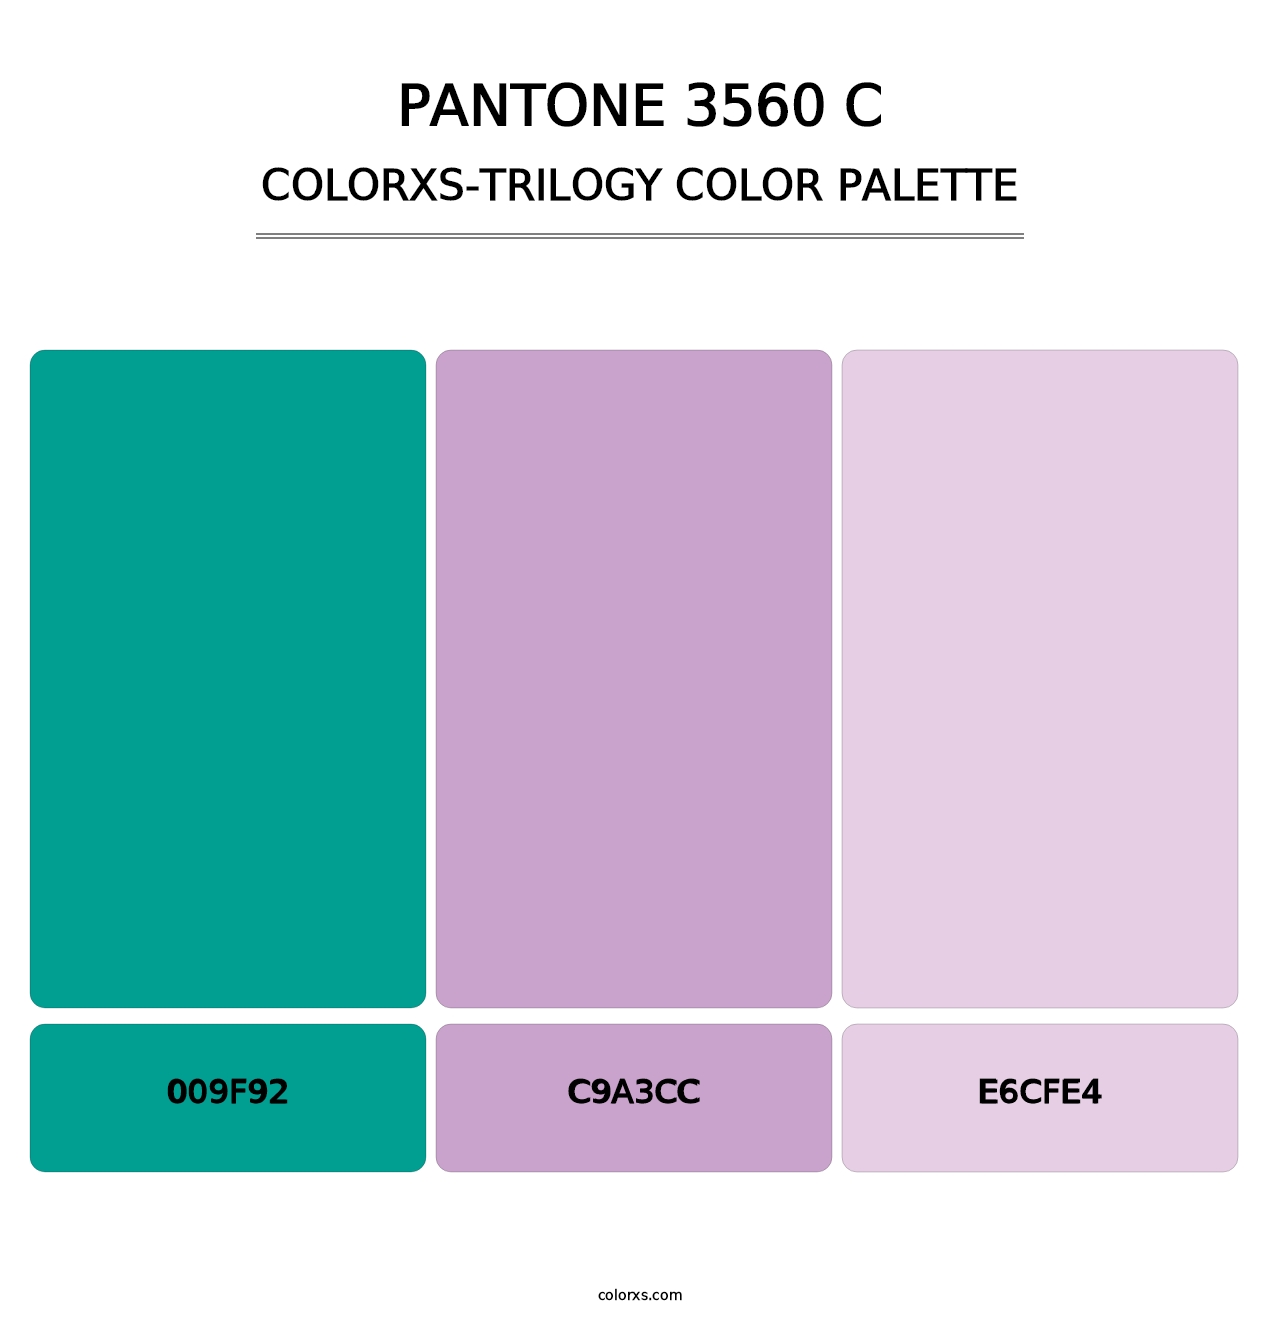 PANTONE 3560 C - Colorxs Trilogy Palette